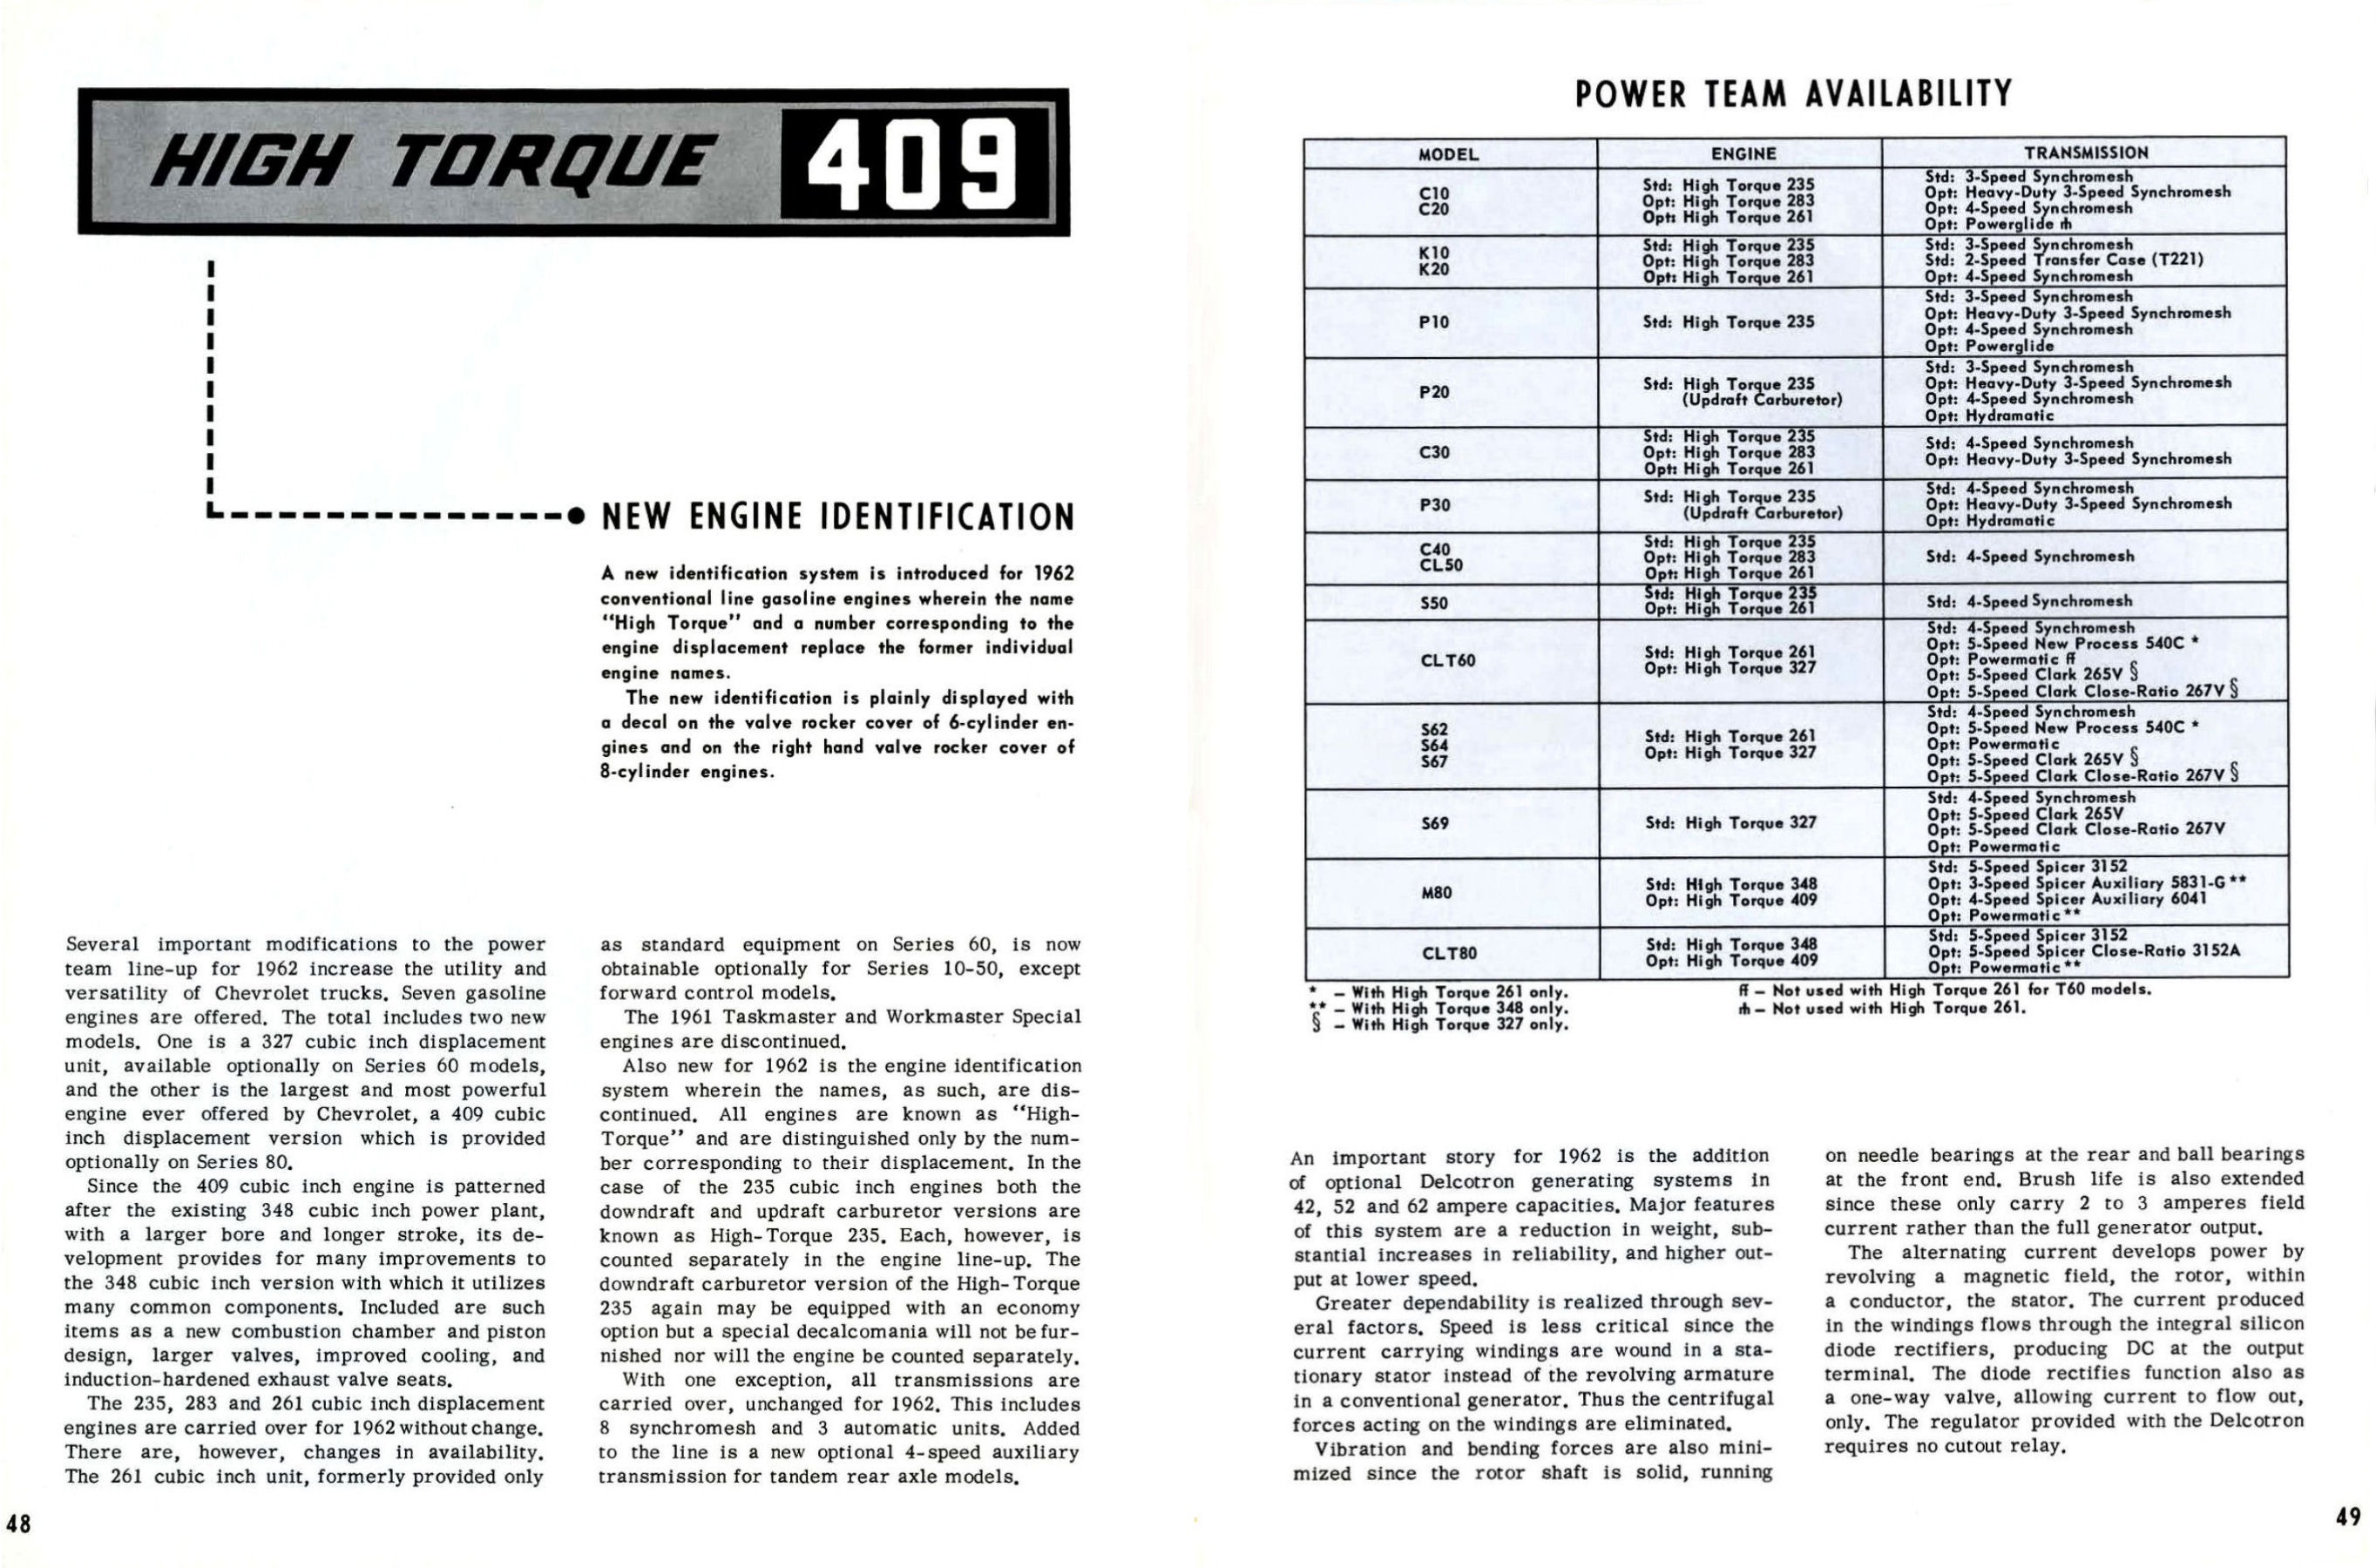 1962 Chevrolet Truck Engineering Features-48-49